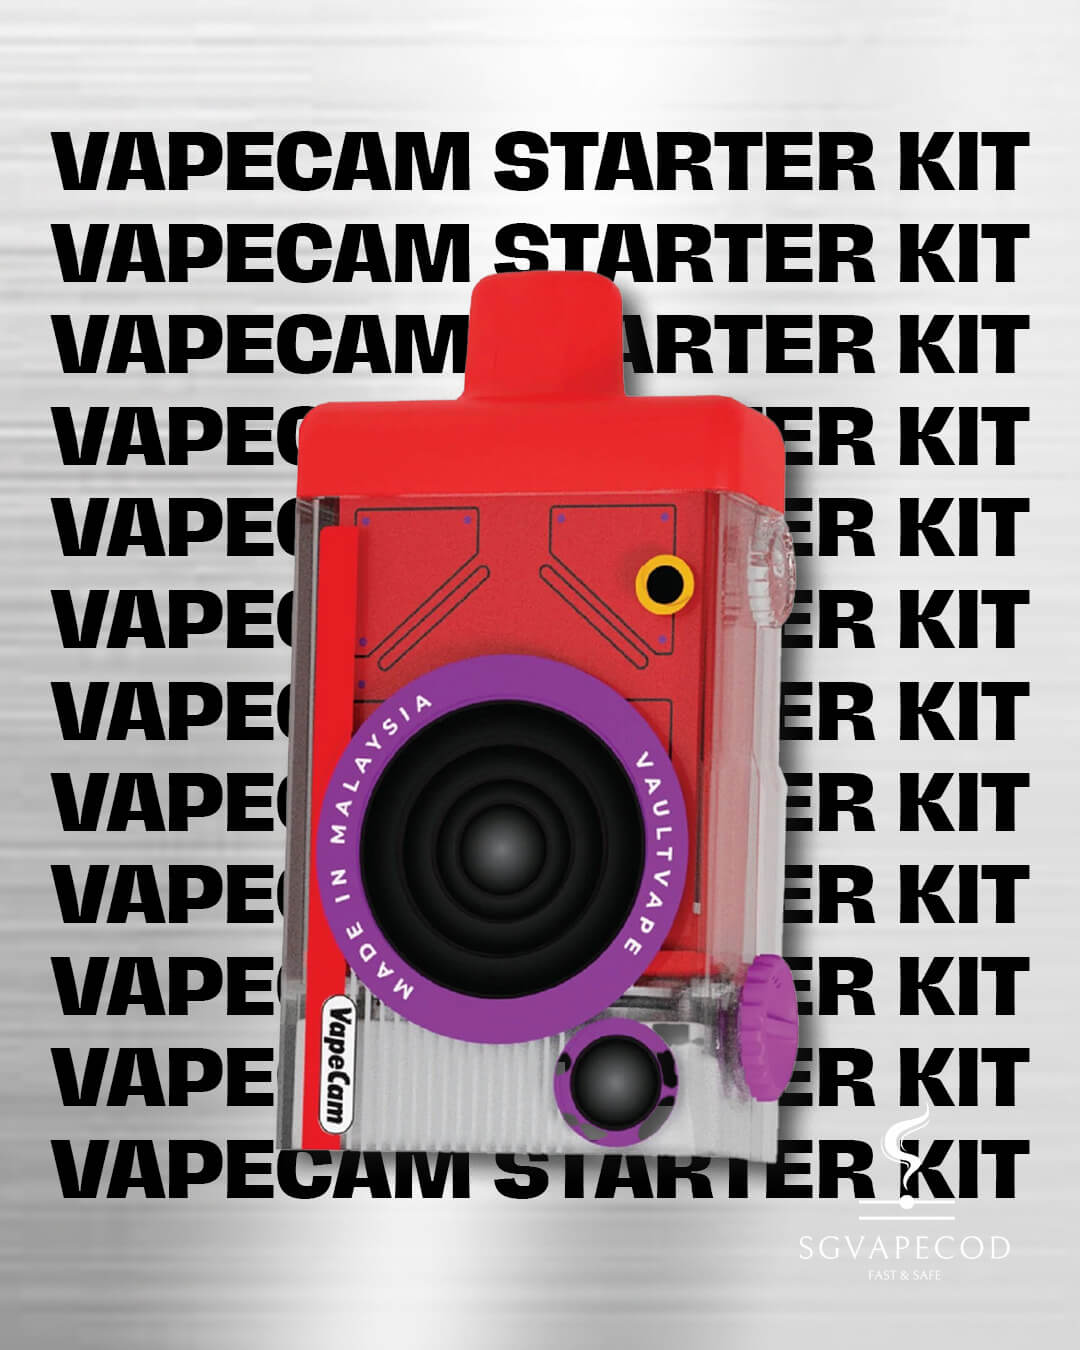 Vapecam-12k-starter-kit-(SG VAPE COD)